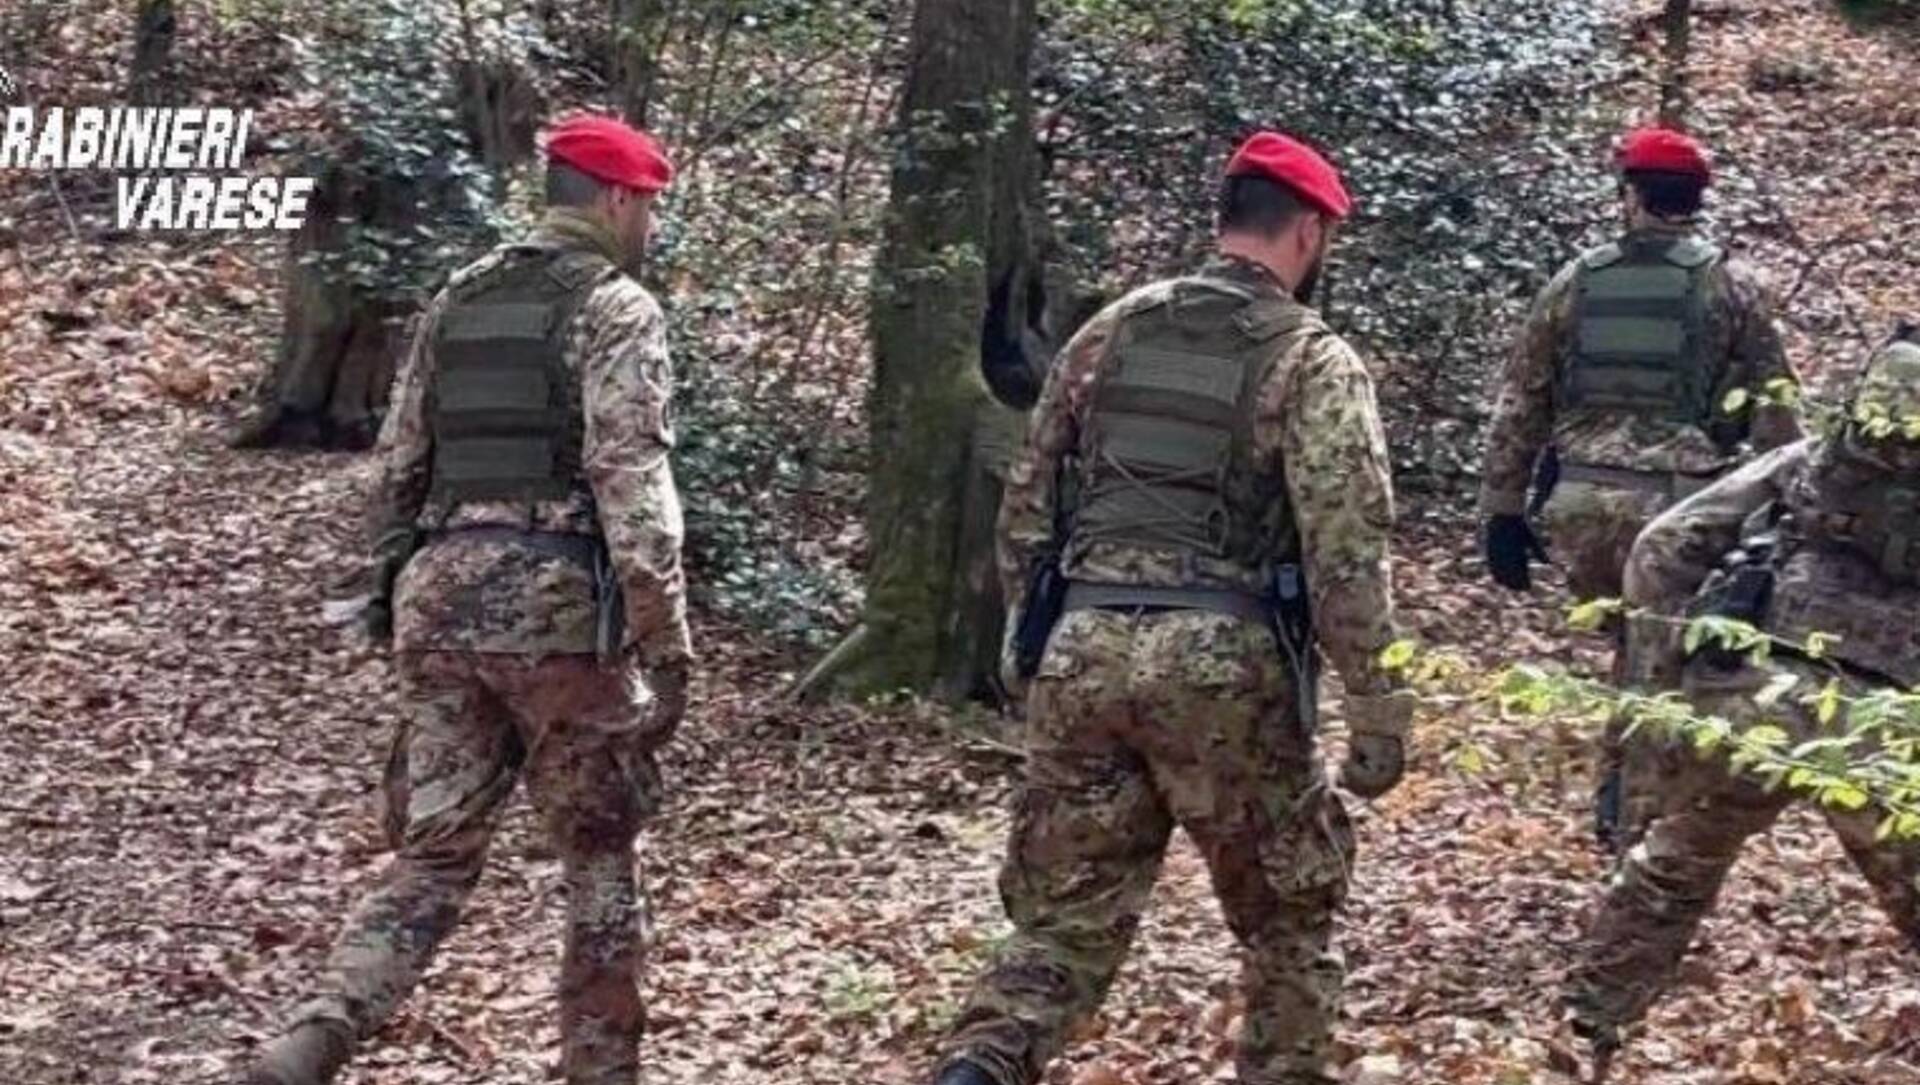 Bivacco dello spaccio nei boschi di Castiglione: arrestato “il gestore”